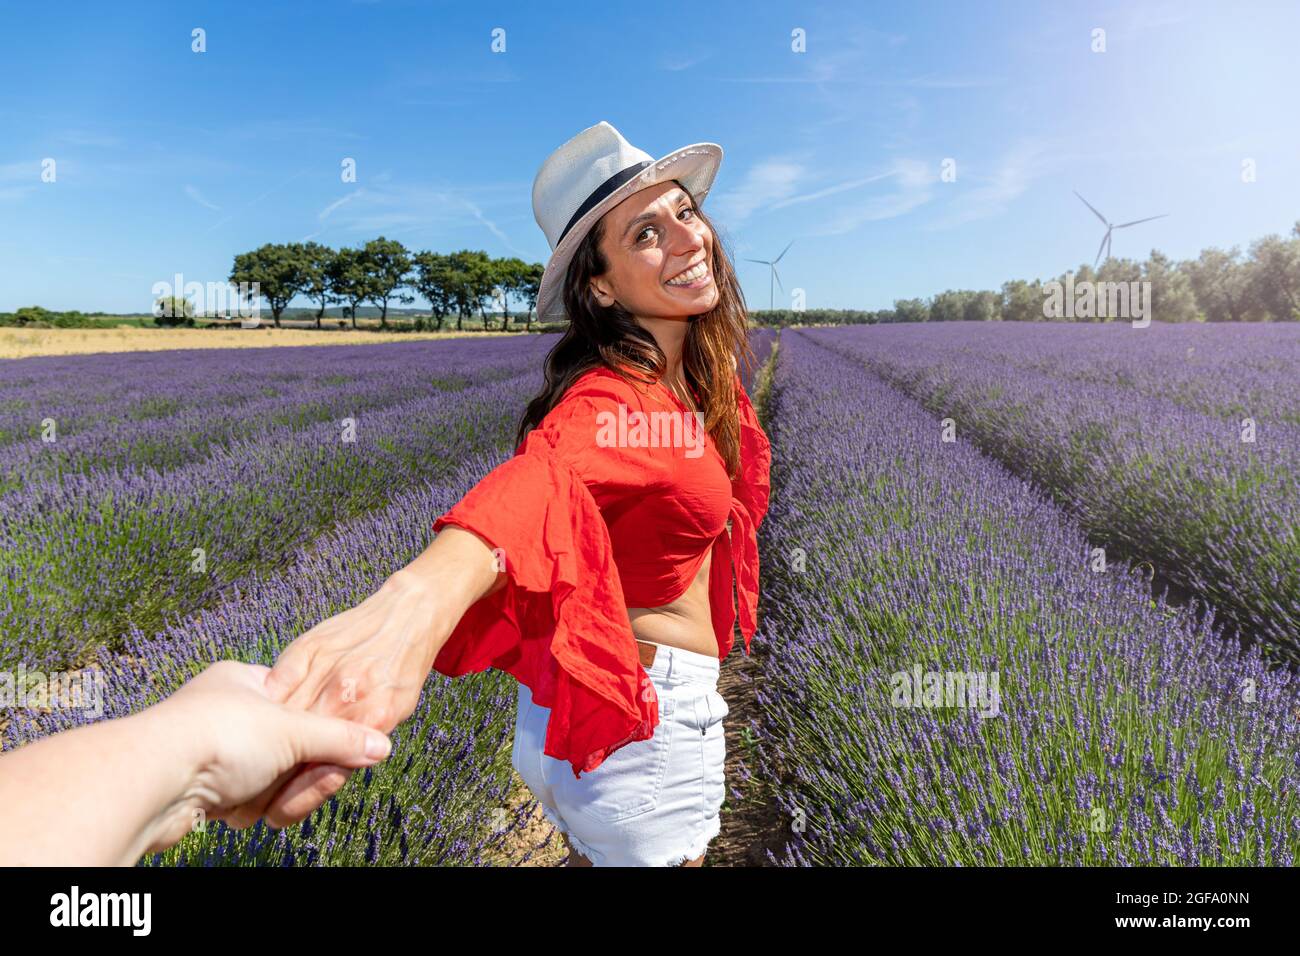 Junge Frau, die in einem Lavendelfeld geht und sich zurückdreht, während sie die Hand einer Person hält. Konzept von Wohlbefinden und Liebe zur Natur. Stockfoto